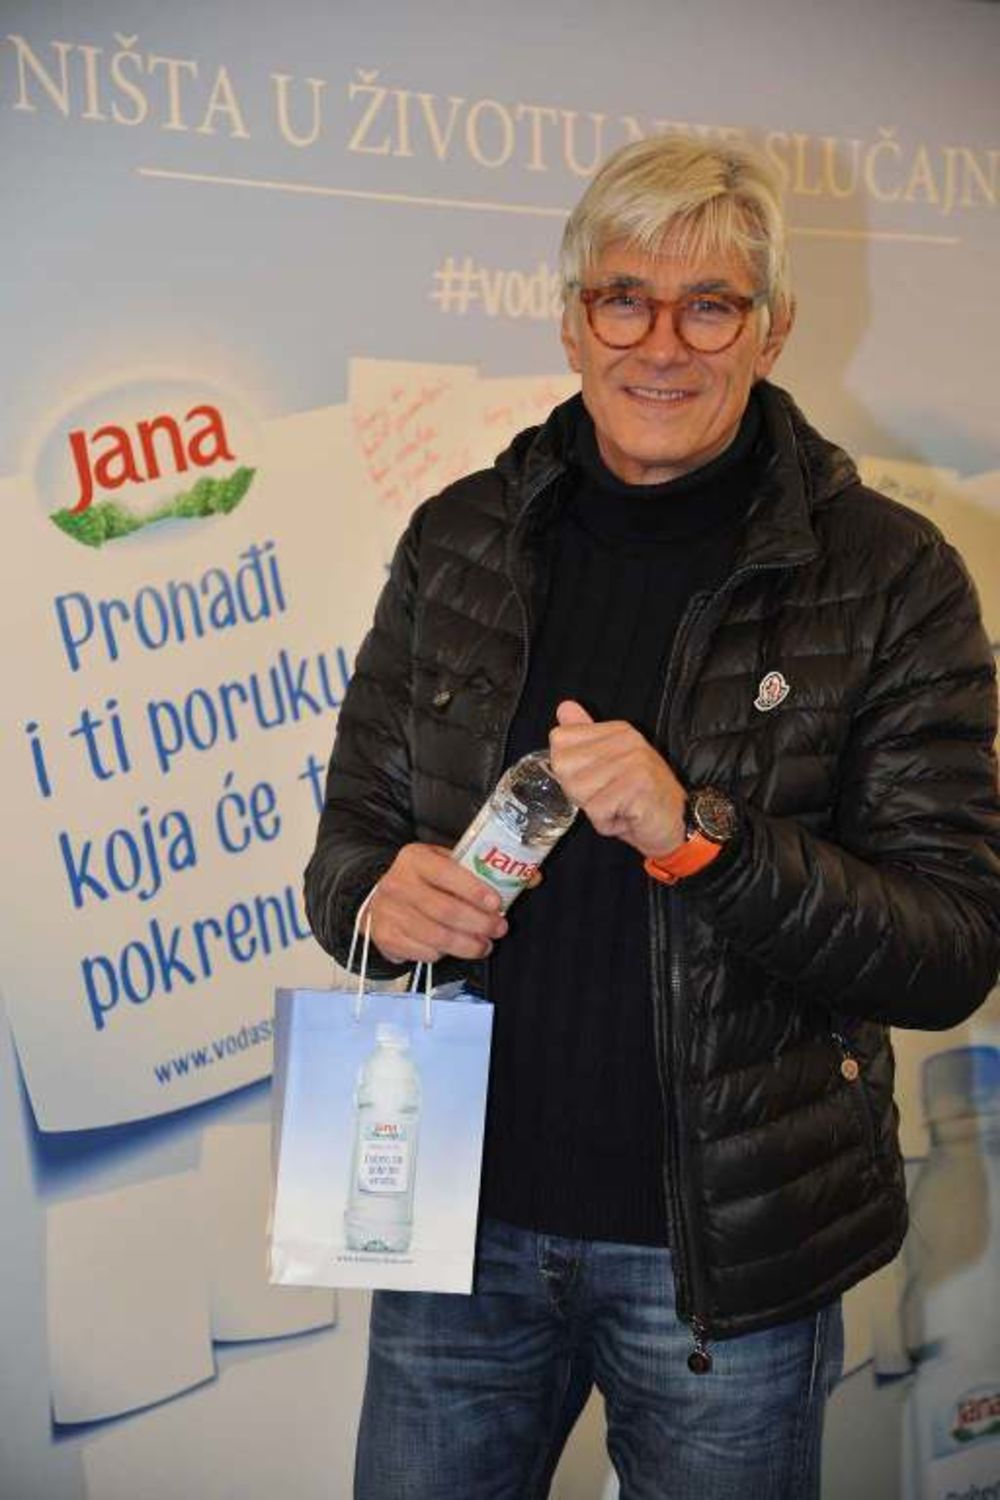 Kompanija Agrokor, sa svojim brendom Jana vodom, pokrenula je novu kampanju pod nazivom Voda sa porukom. Nova kampanja vode Jana podrazumeva vise motivacije i inspiracije za svakog potrošača. Na poledjini boce Jana vode, nalaze se inspirativne poruke i citati